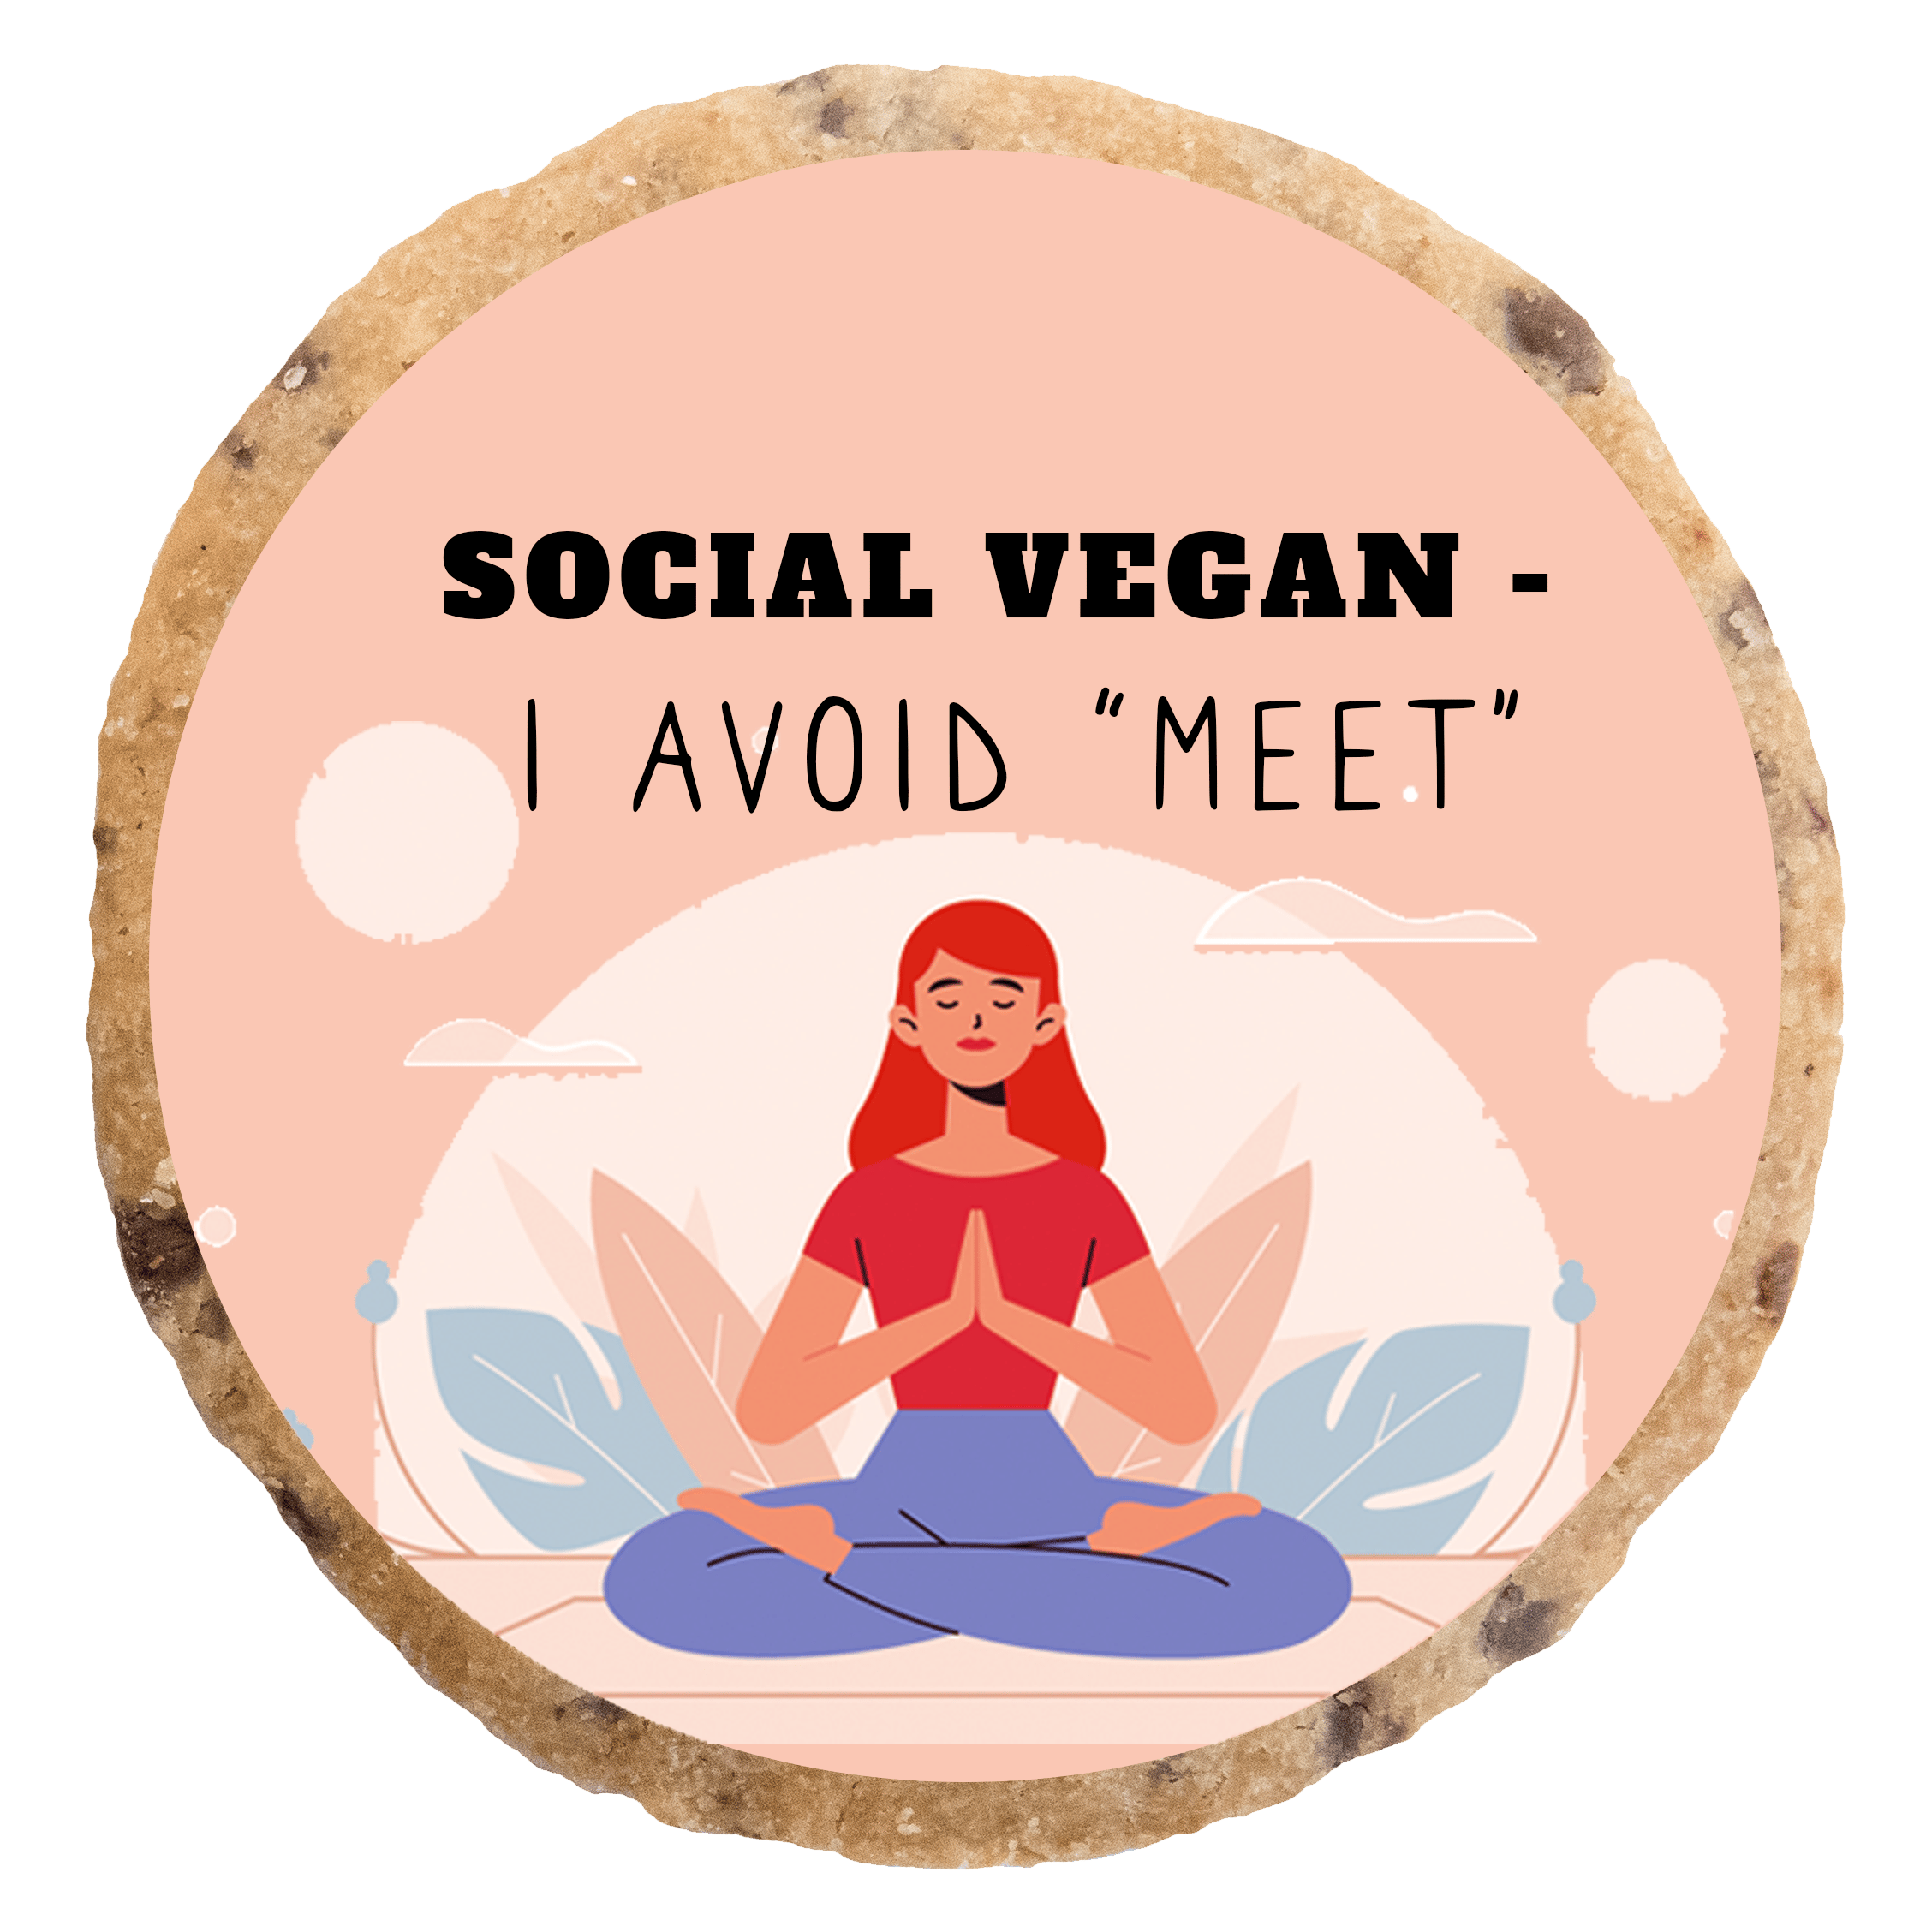 "Social vegan" MotivKEKS